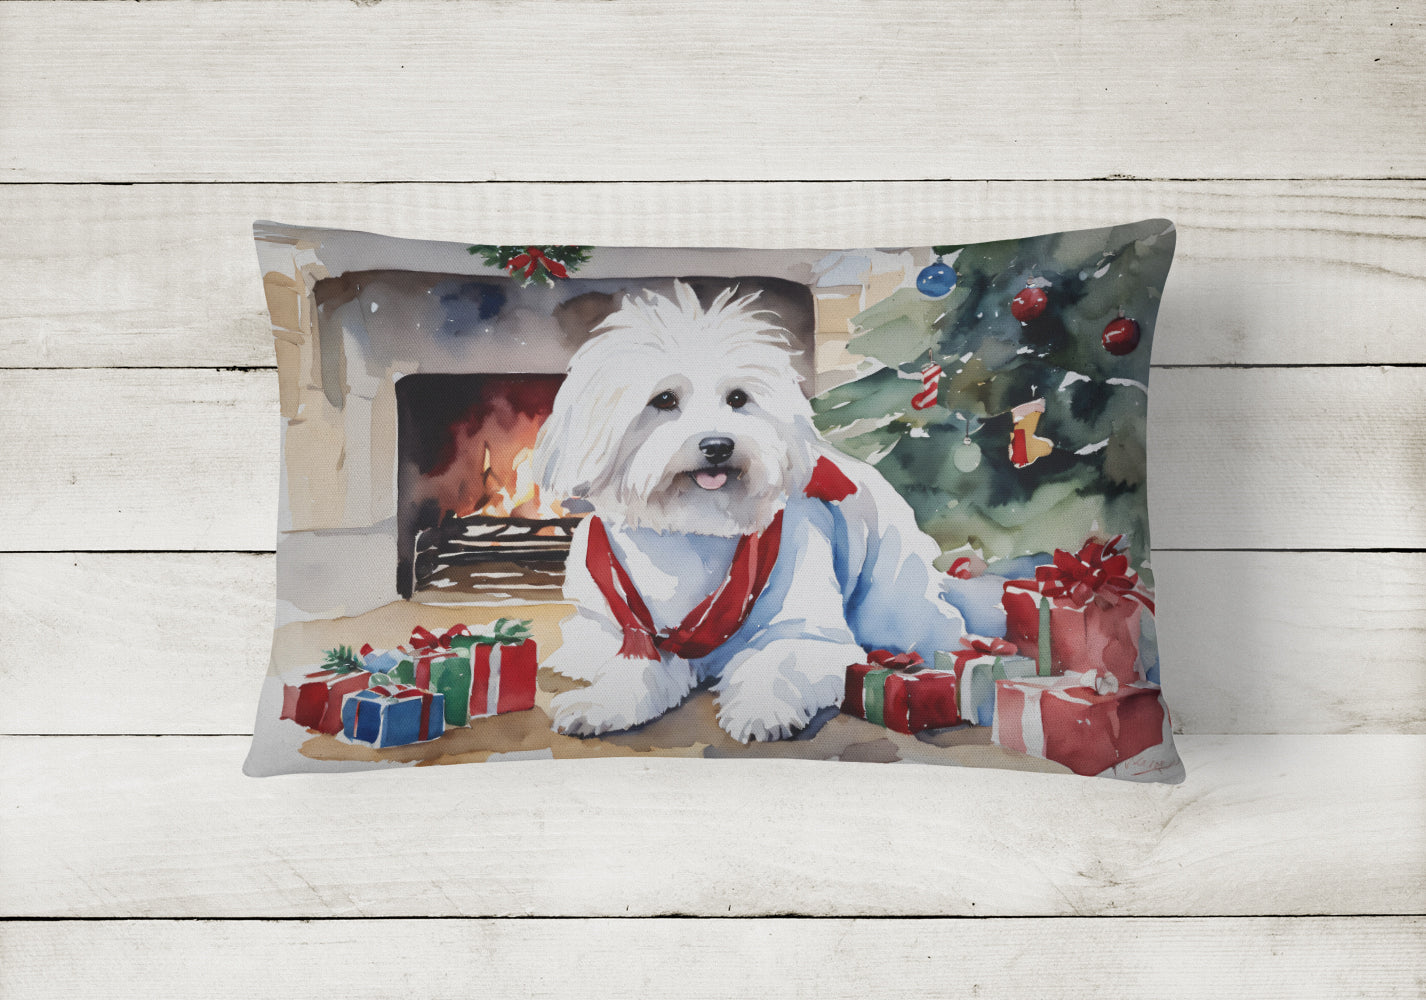 Buy this Coton De Tulear Cozy Christmas Throw Pillow